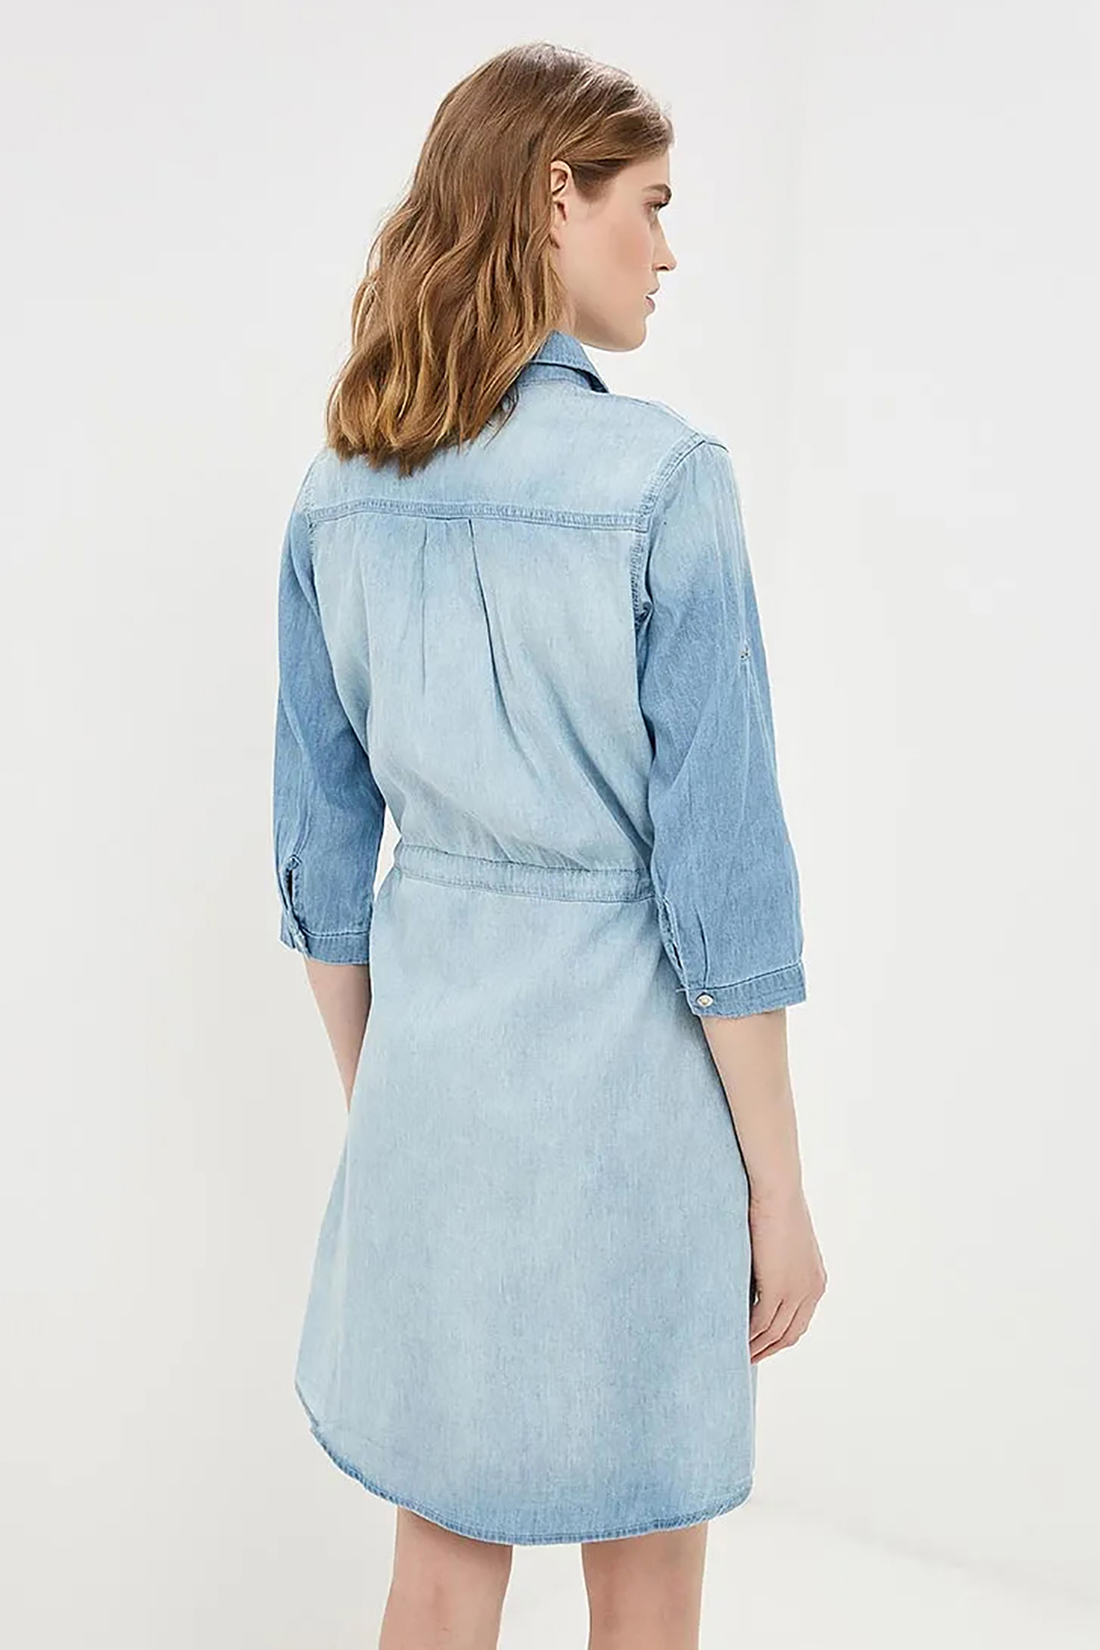 Платье-рубашка из денима (арт. baon B459103), размер S, цвет light blue denim#голубой Платье-рубашка из денима (арт. baon B459103) - фото 2